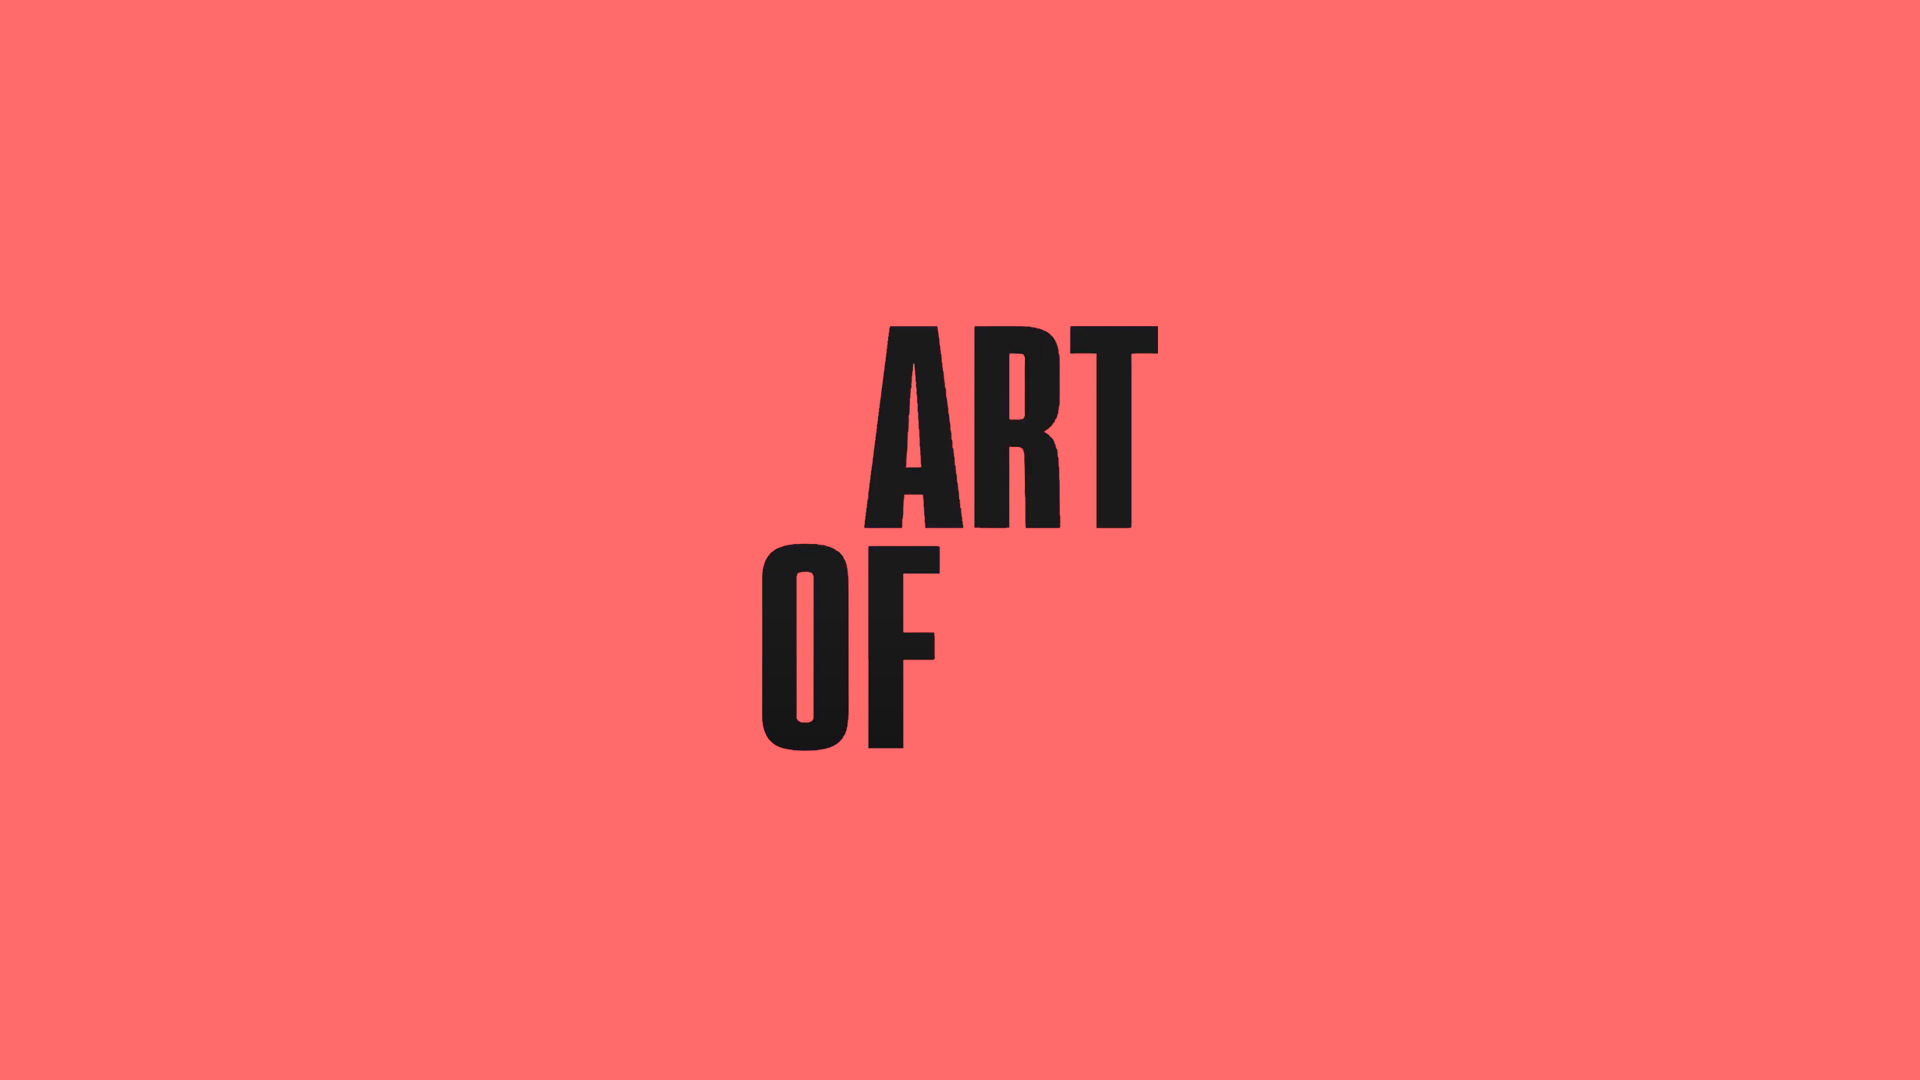 Logo des Digitalprojektes Art of. Die Schrift ist schwarz die Folie dunkelrosa.